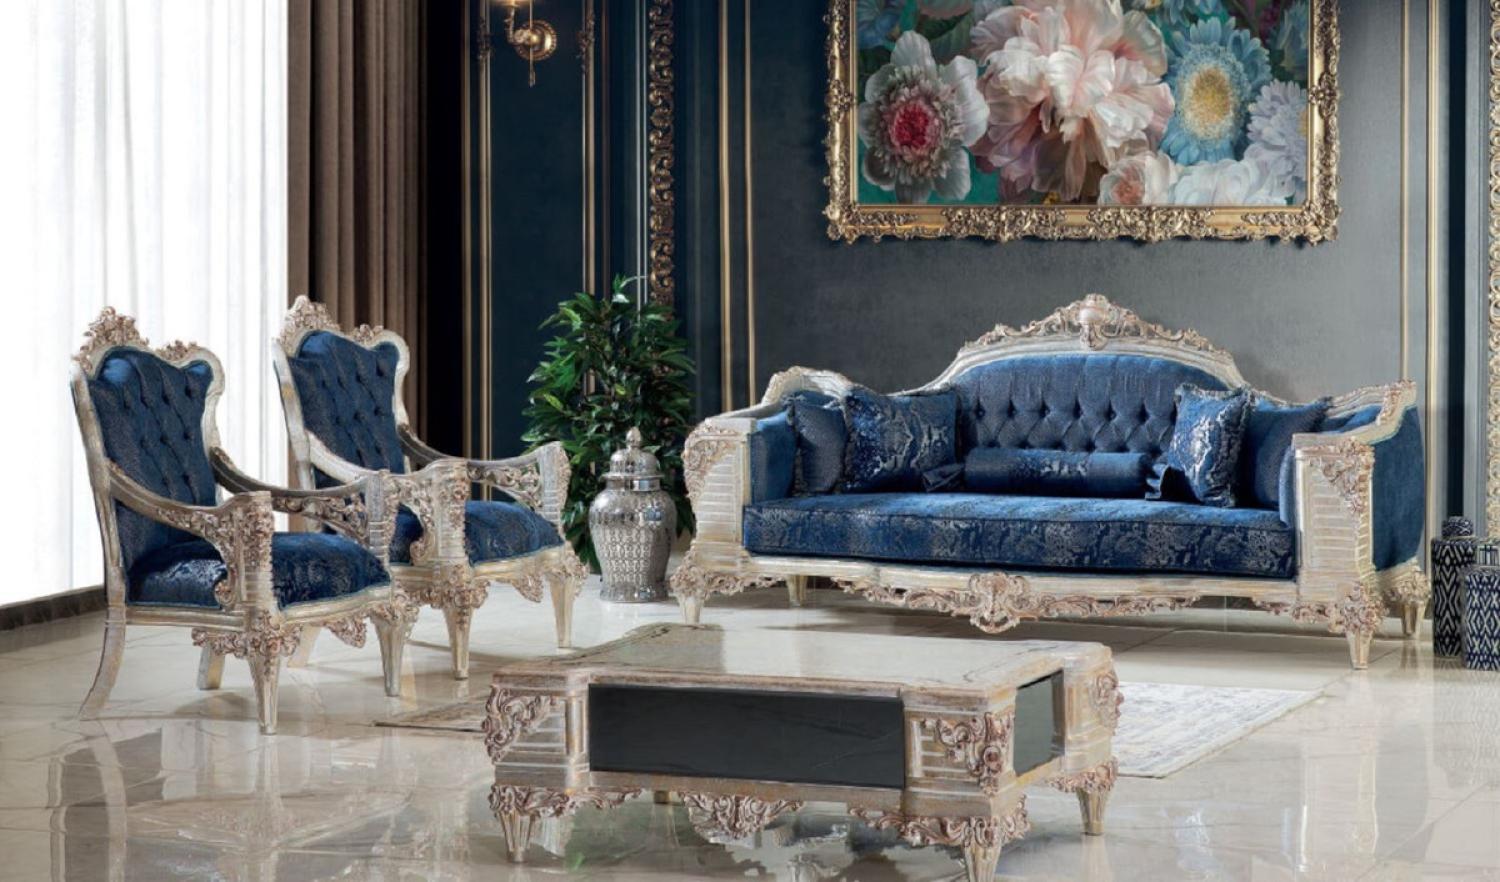 Casa Padrino Luxus Barock Wohnzimmer Set Blau / Creme / Kupfer / Gold - 2 Sofas & 2 Sessel & 1 Couchtisch - Handgefertigte Wohnzimmer Möbel im Barockstil - Edel & Prunkvoll Bild 1